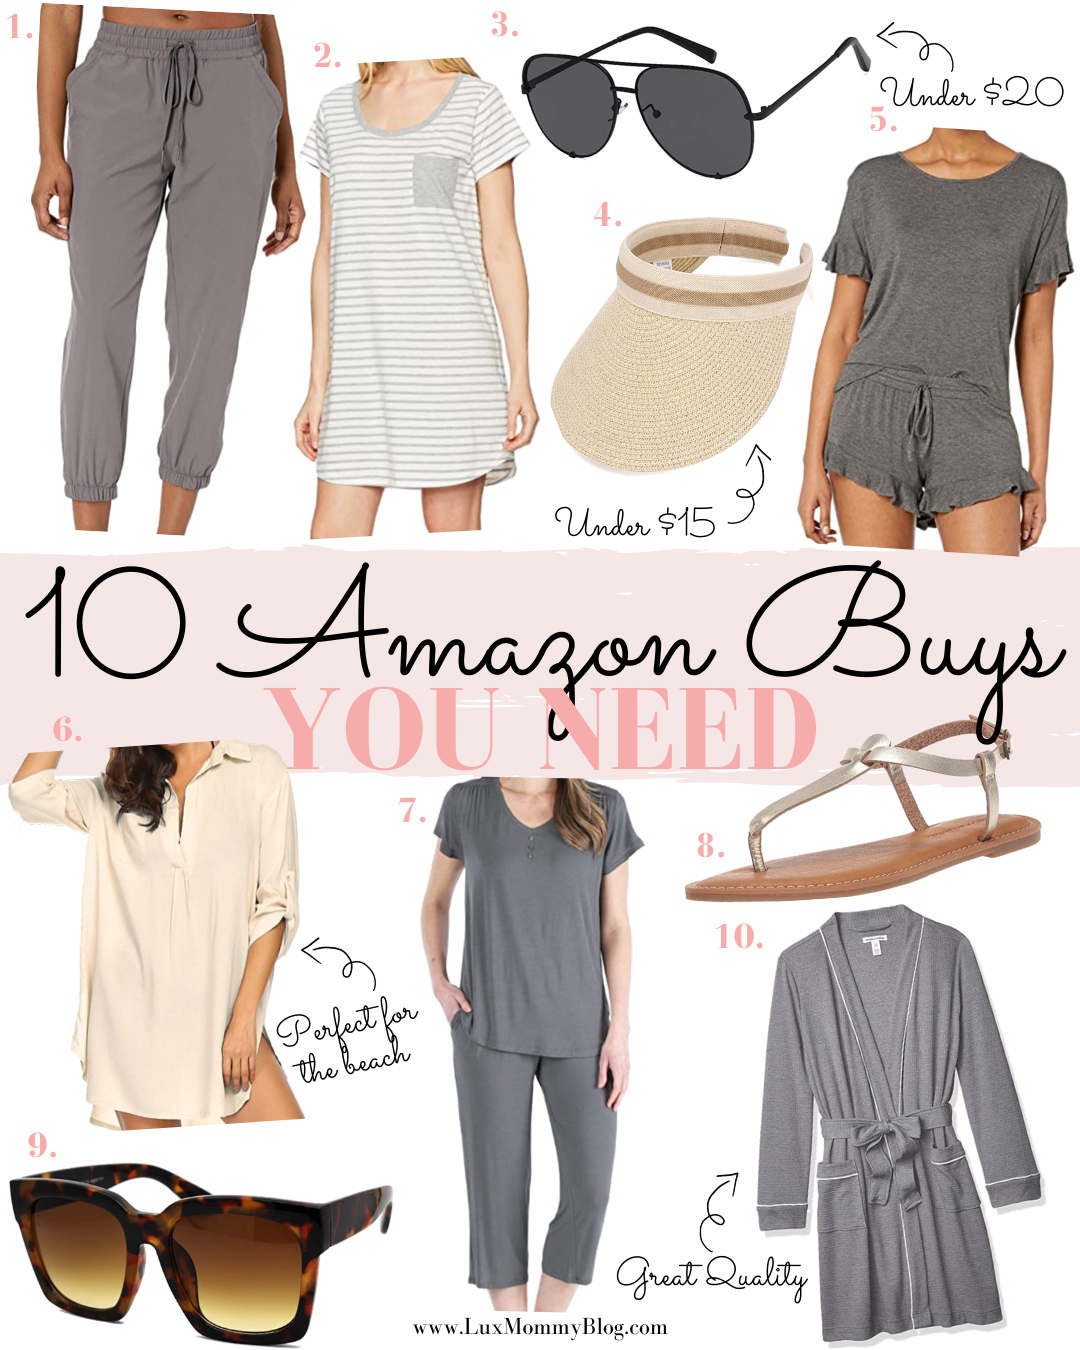 Houston Fashion and Lifestyle Blogger LuxMommy shares 10 Amazon Buys You Need